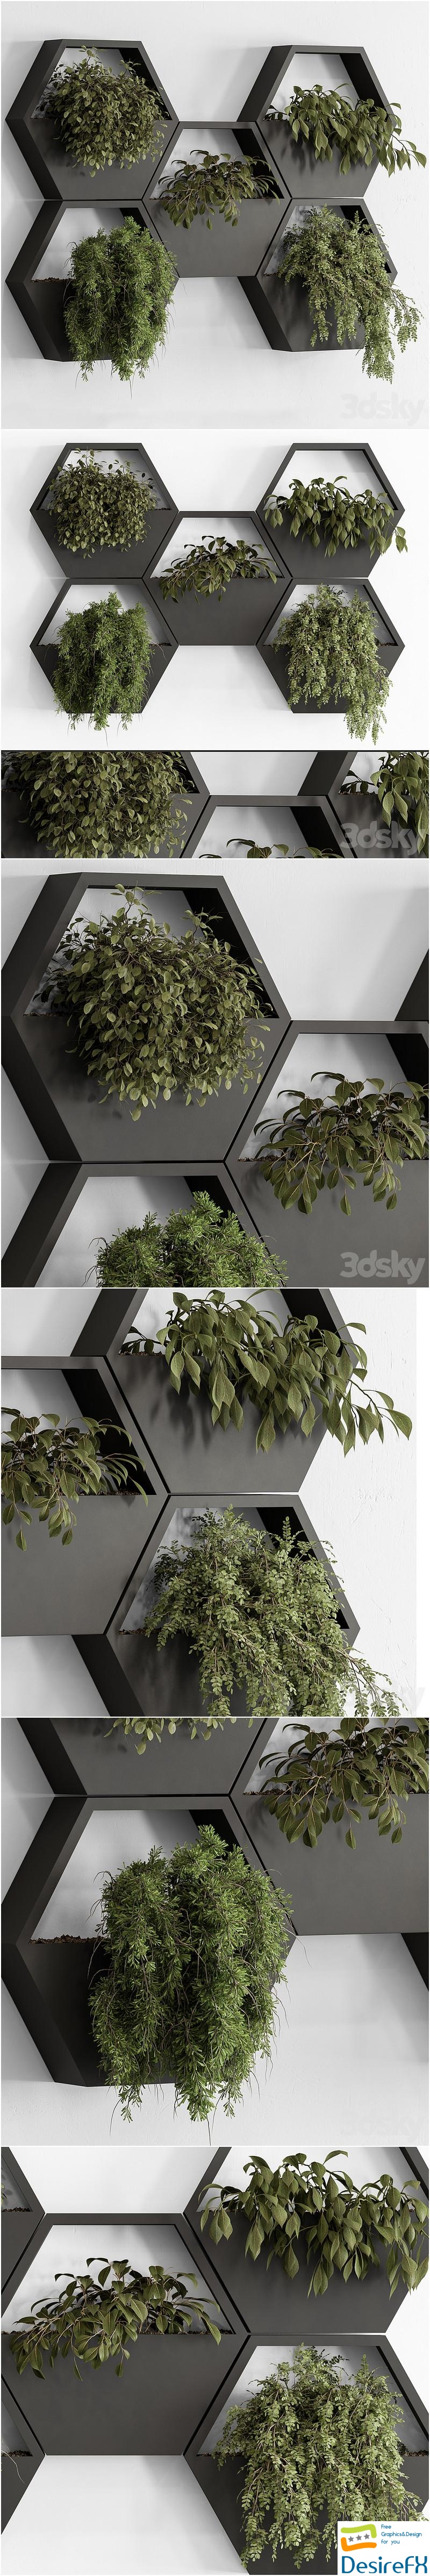 indoor Plant 536 - Hanging Plants 3D Model